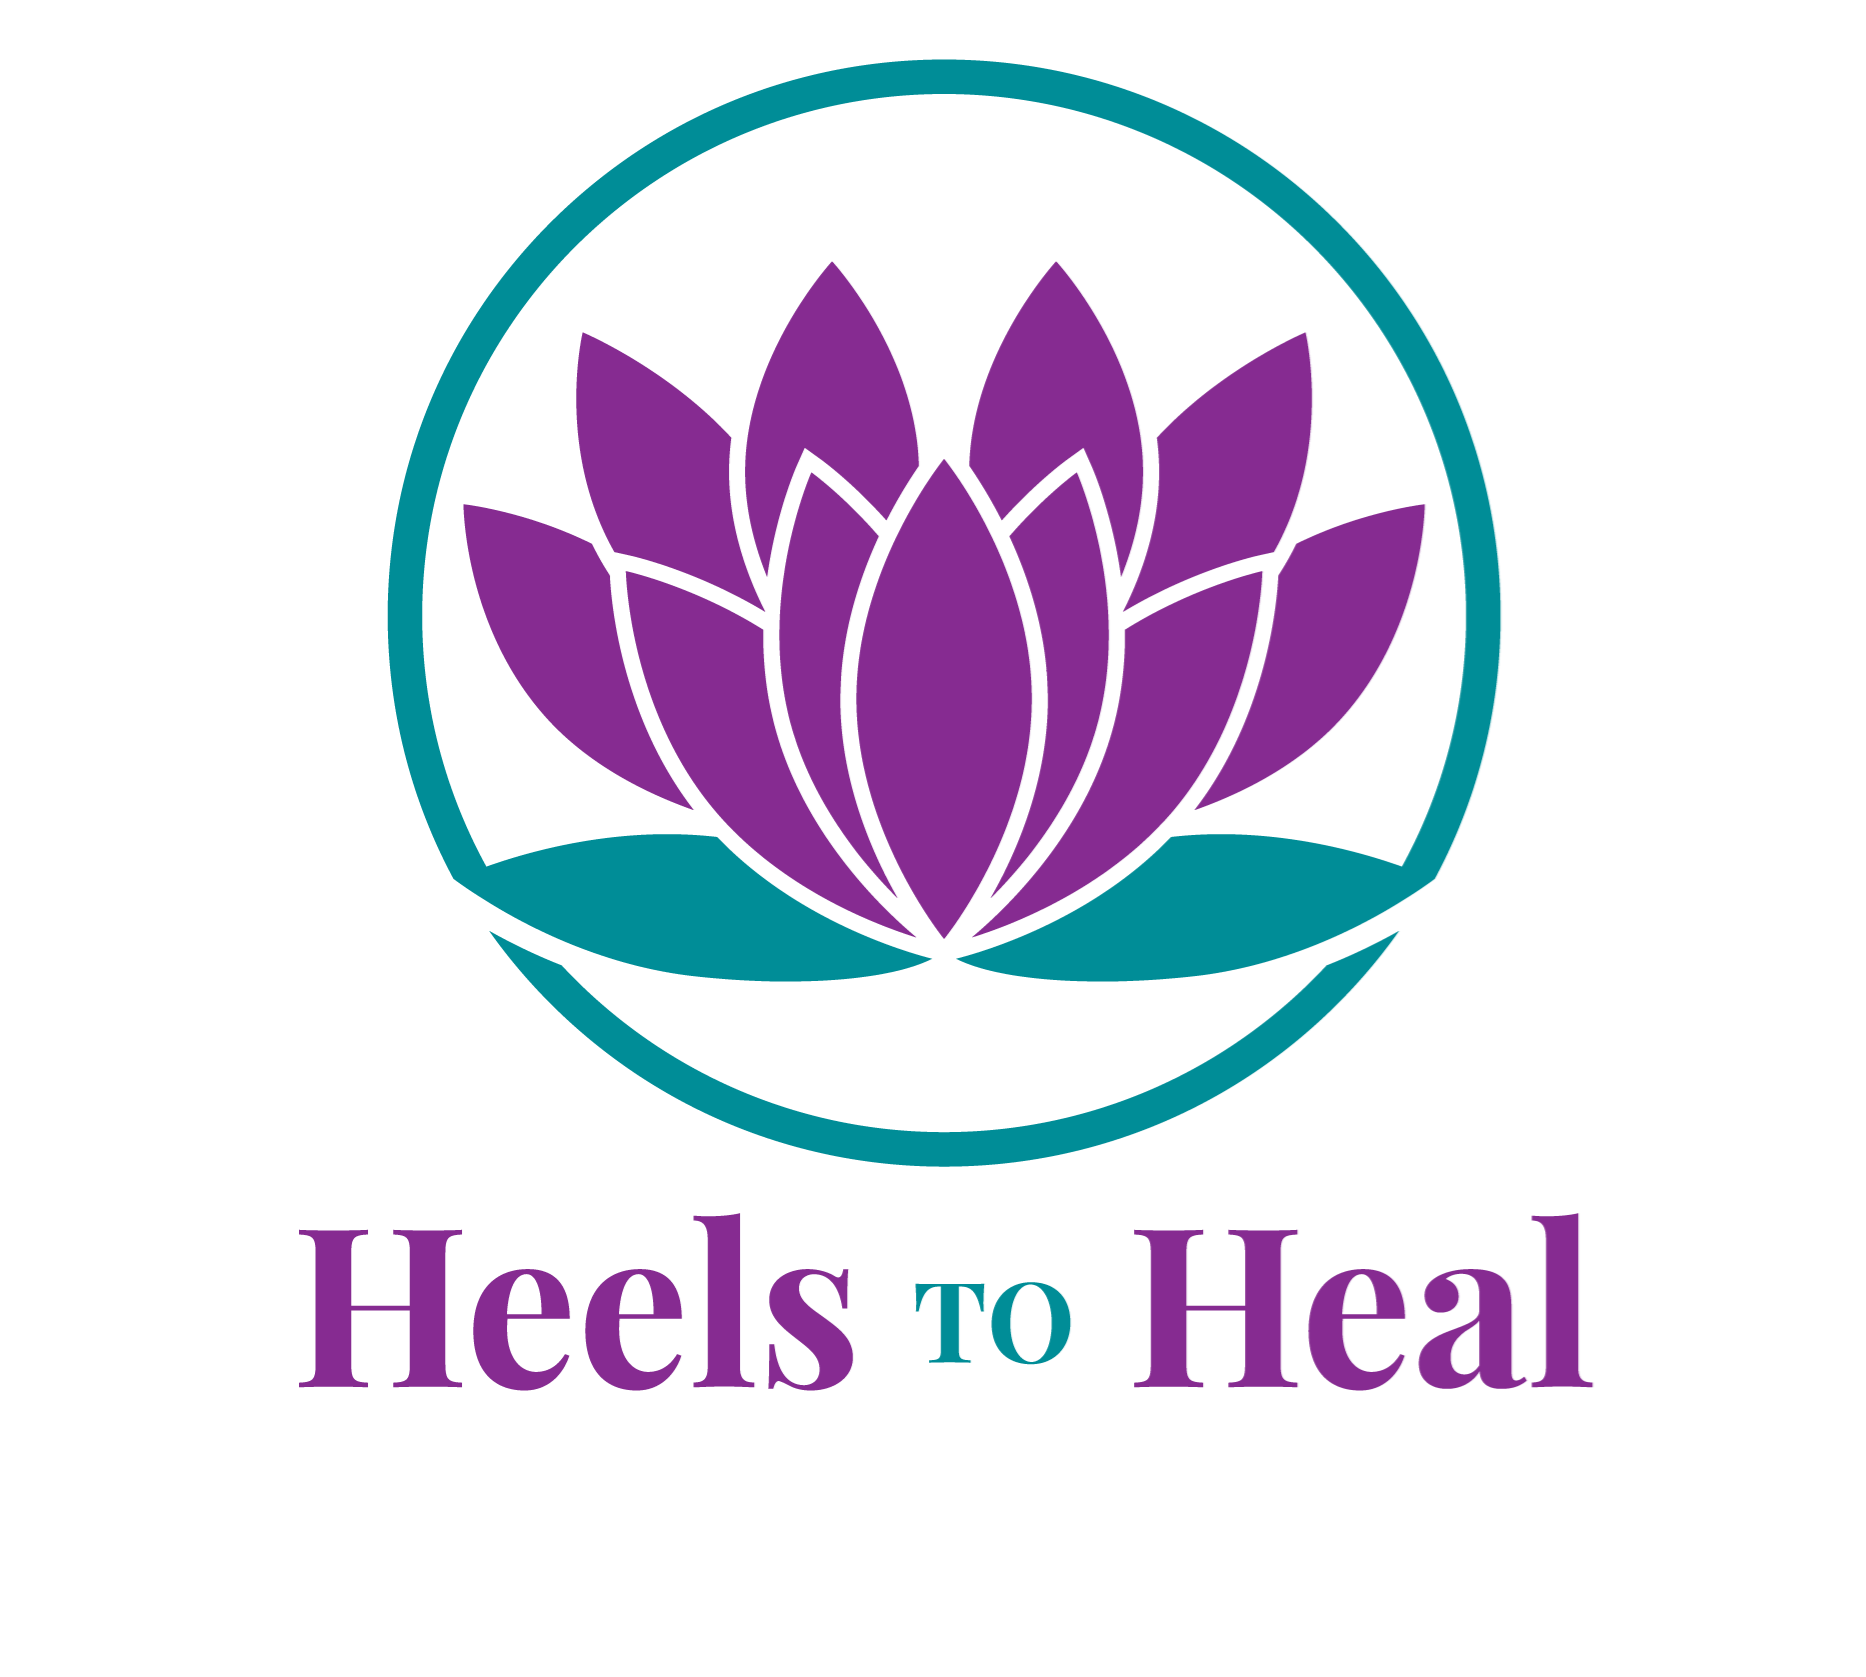 Heels 2 Heal Charity